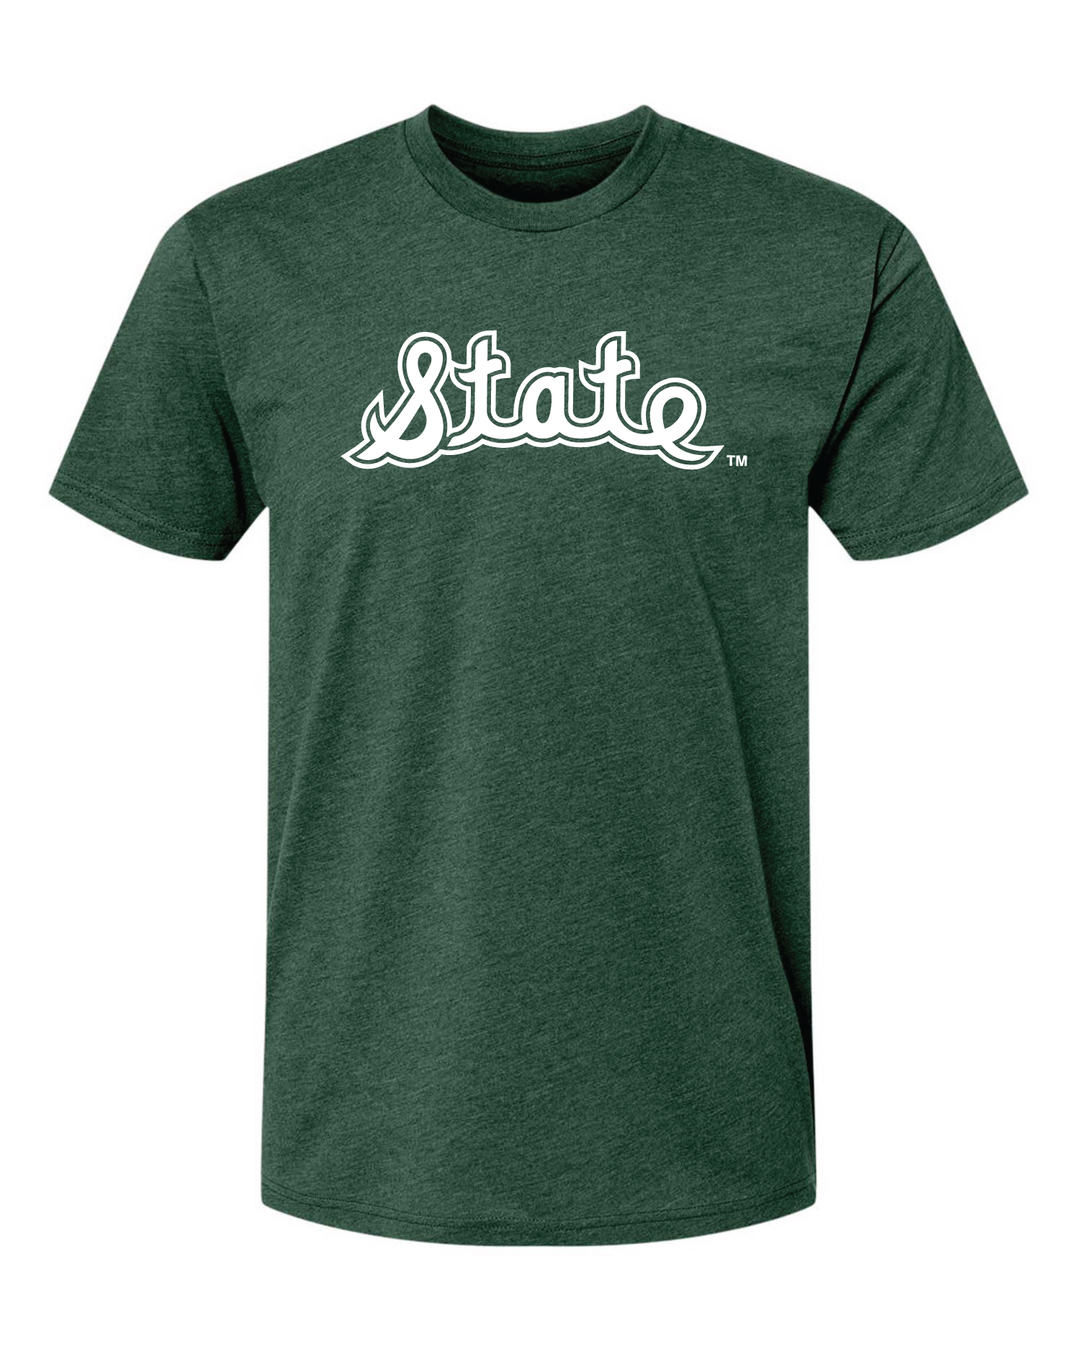 MSU Cursive State script green t-shirt